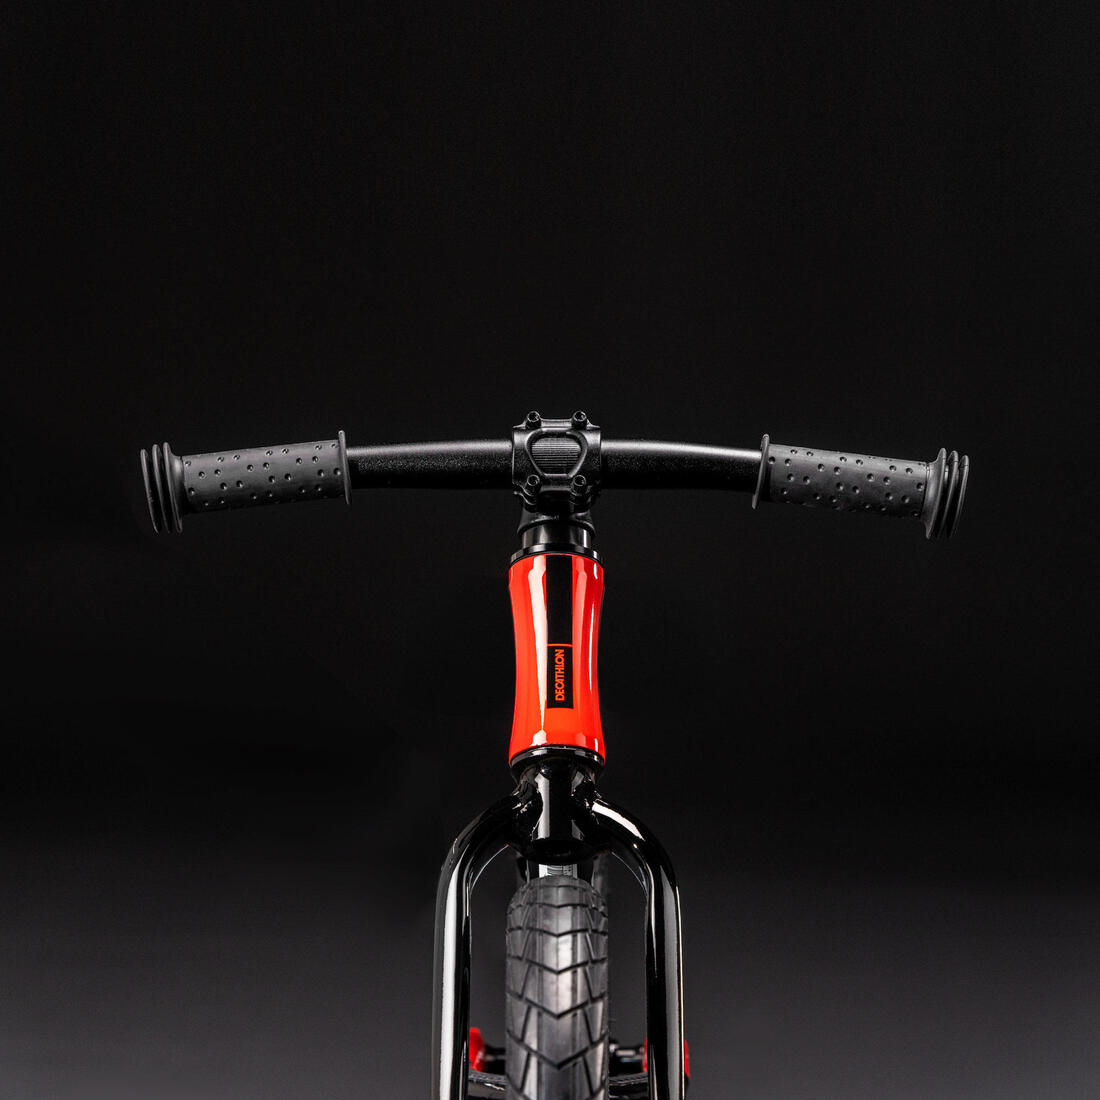 B'TWIN(ビトウィン) サイクリング キックバイク 自転車 Runride 920 キッズ (3～6歳用)